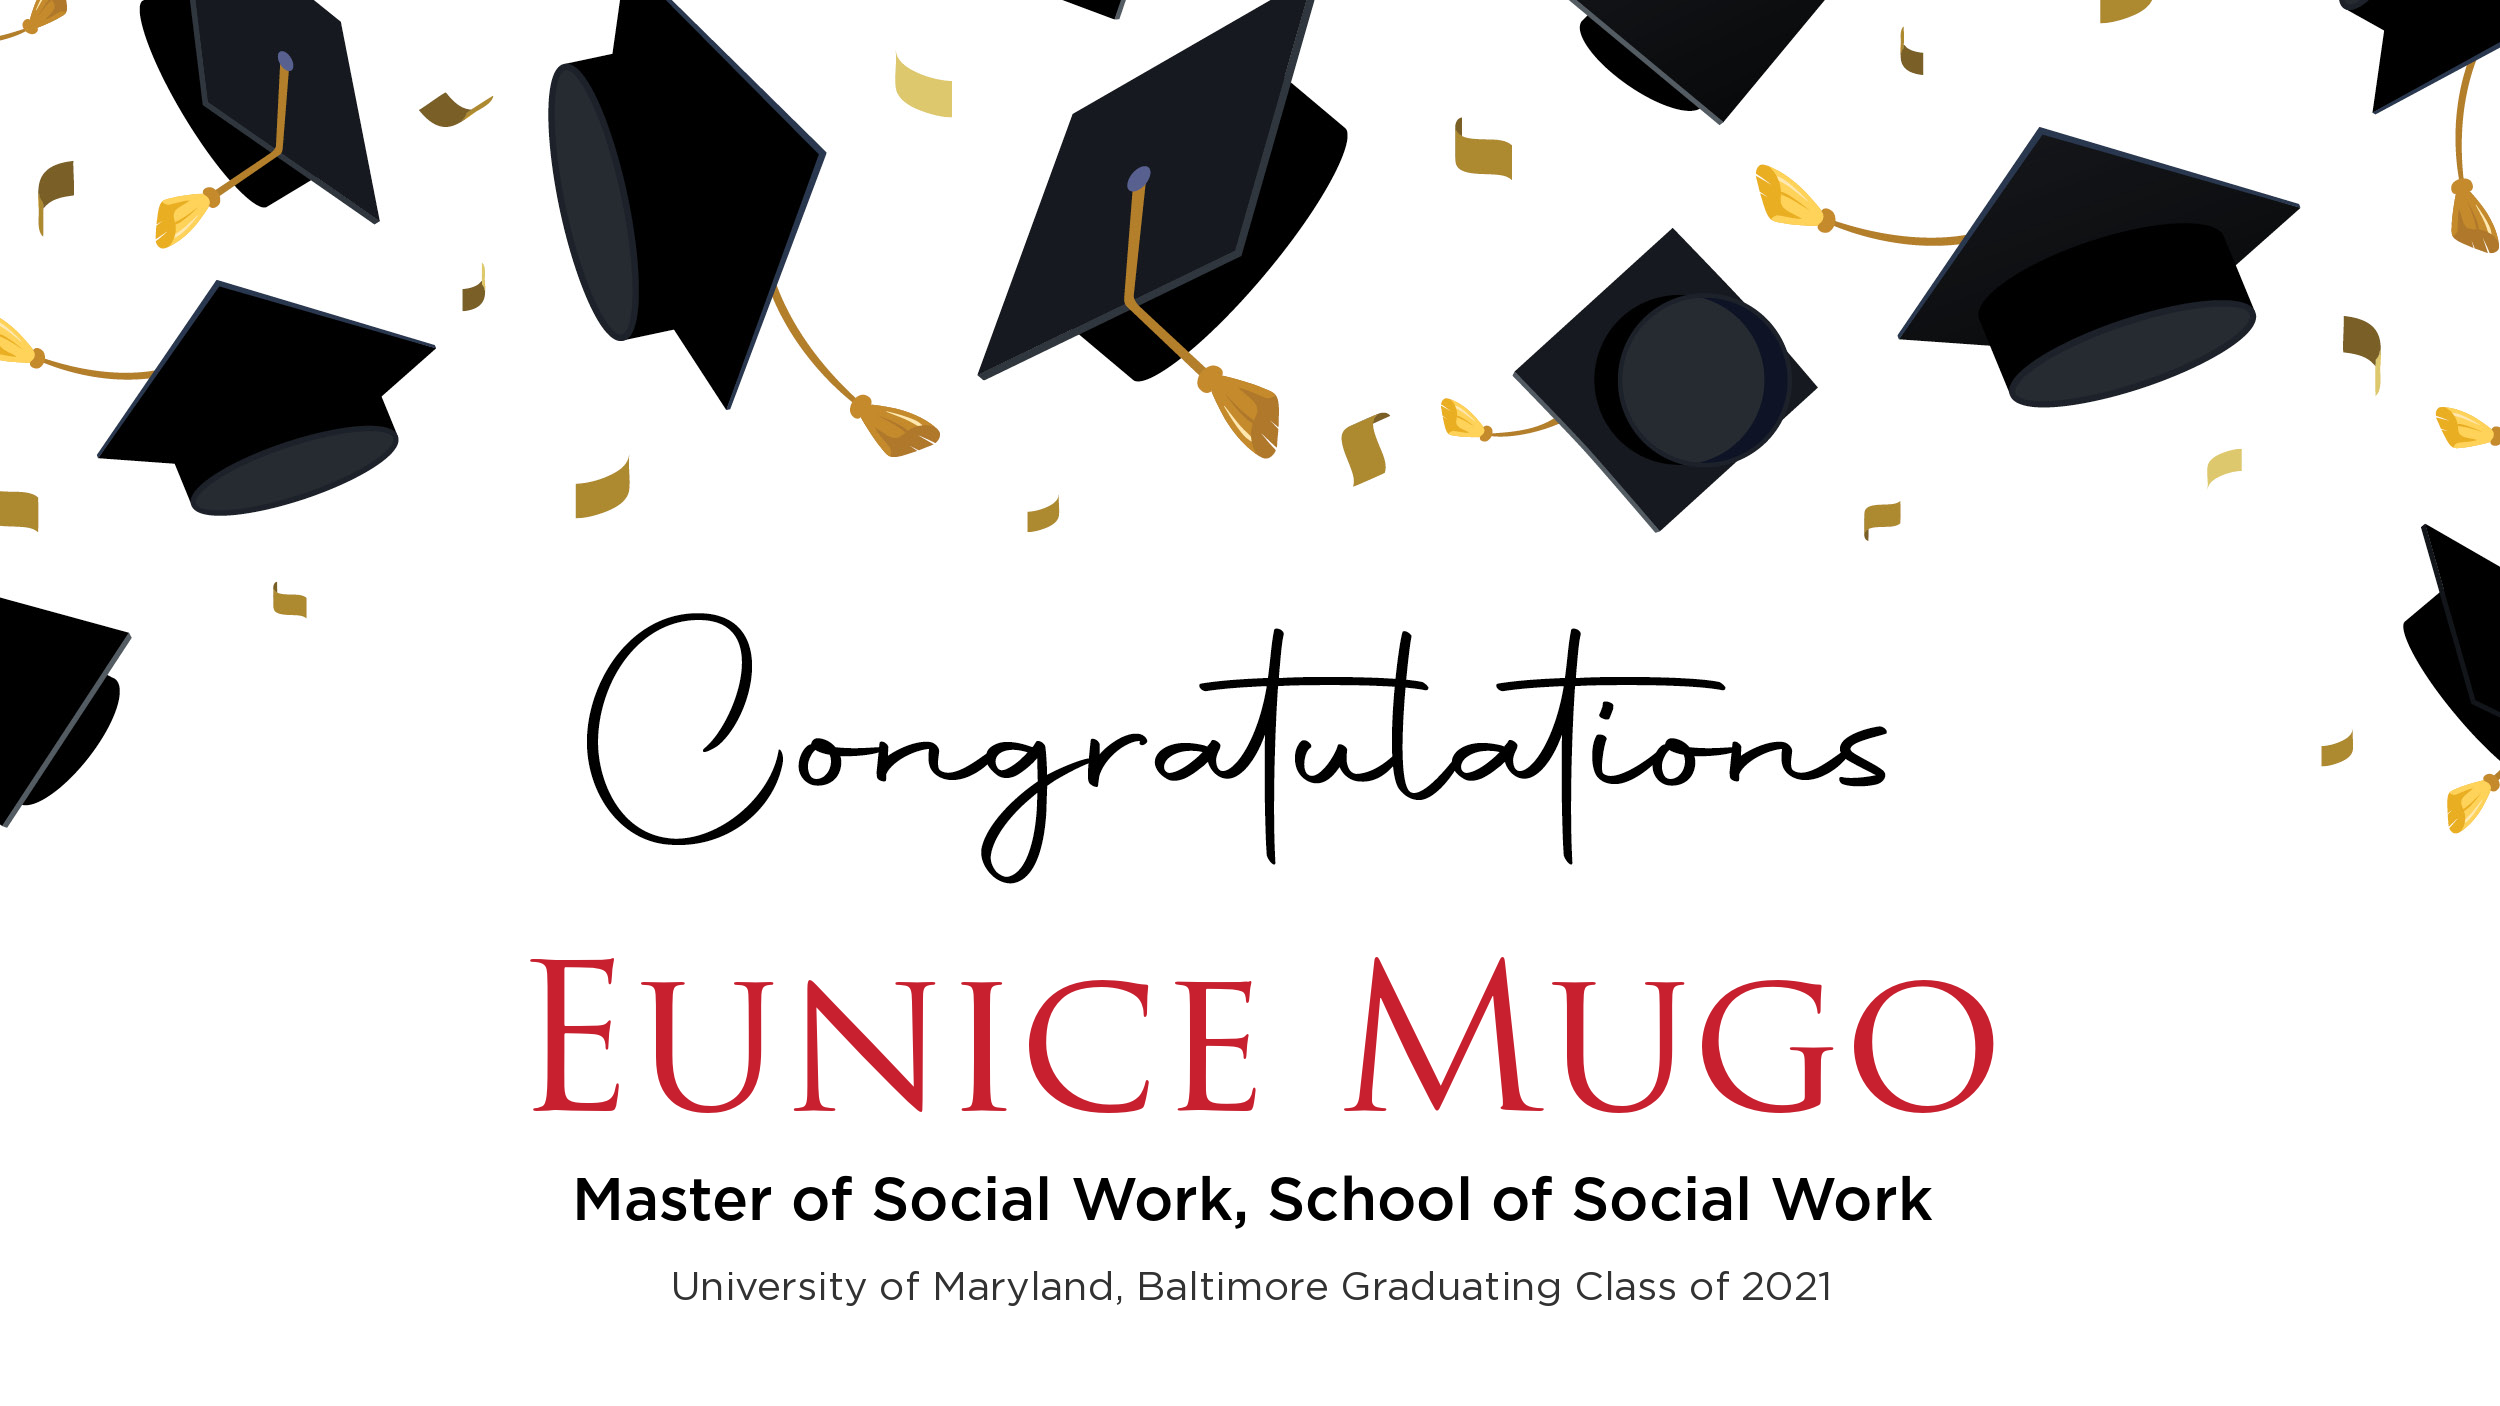 Congratulations Eunice Mugo, Master of Social Work